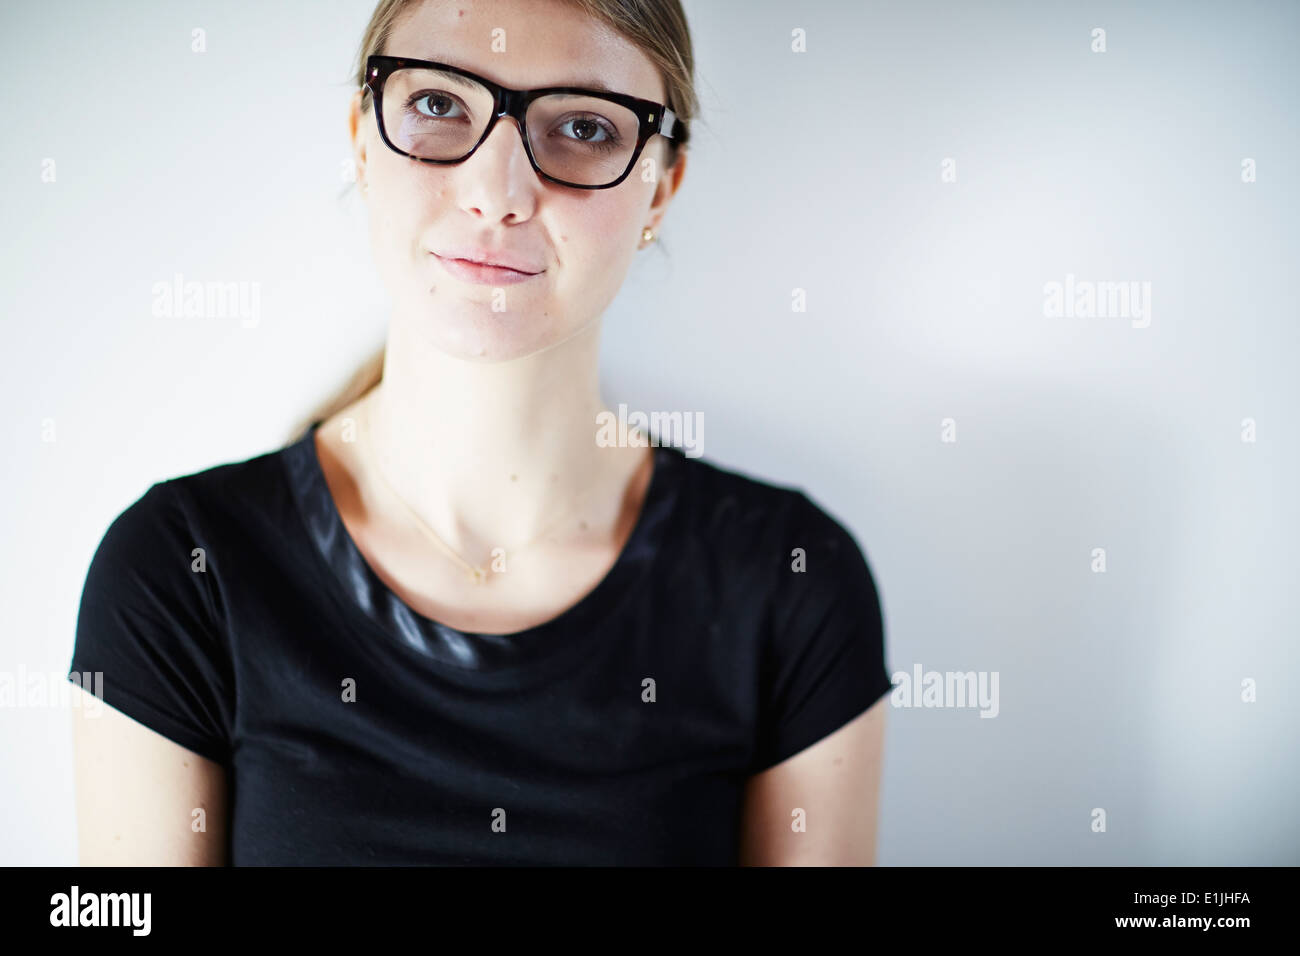 Jeune femme portant des lunettes et black top, studio shot Banque D'Images